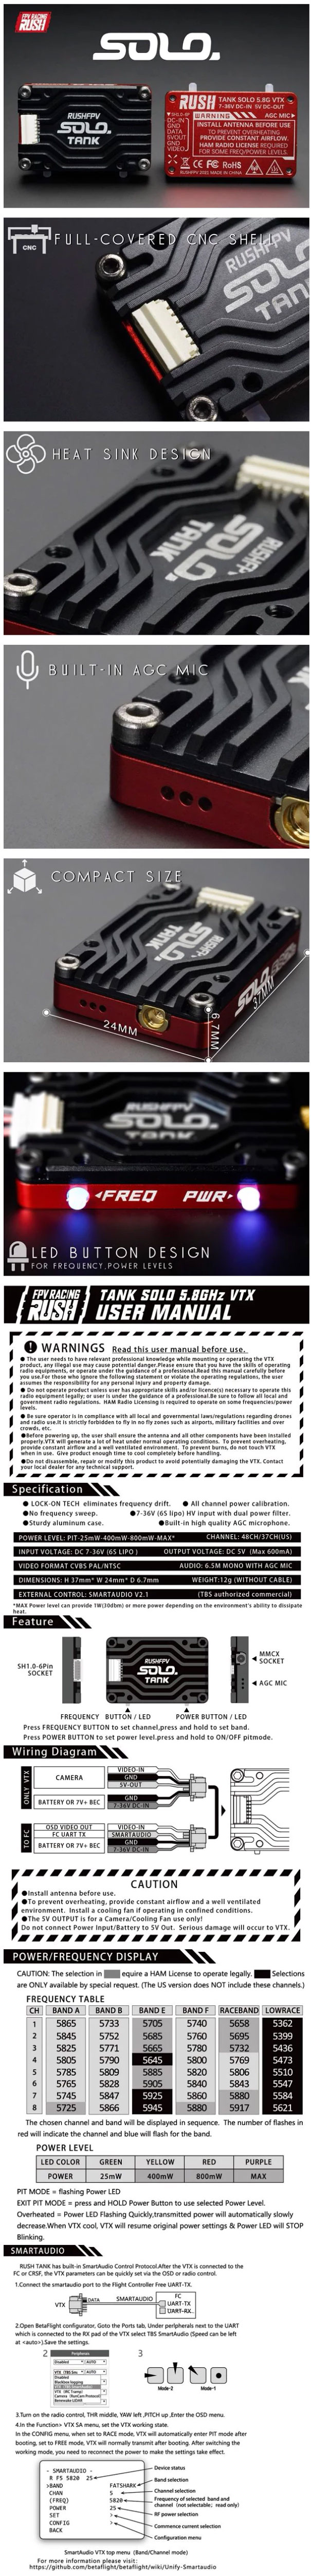 RushFPV Rush Tank SOLO 5.8GHz VTX Infographic Robotonbd